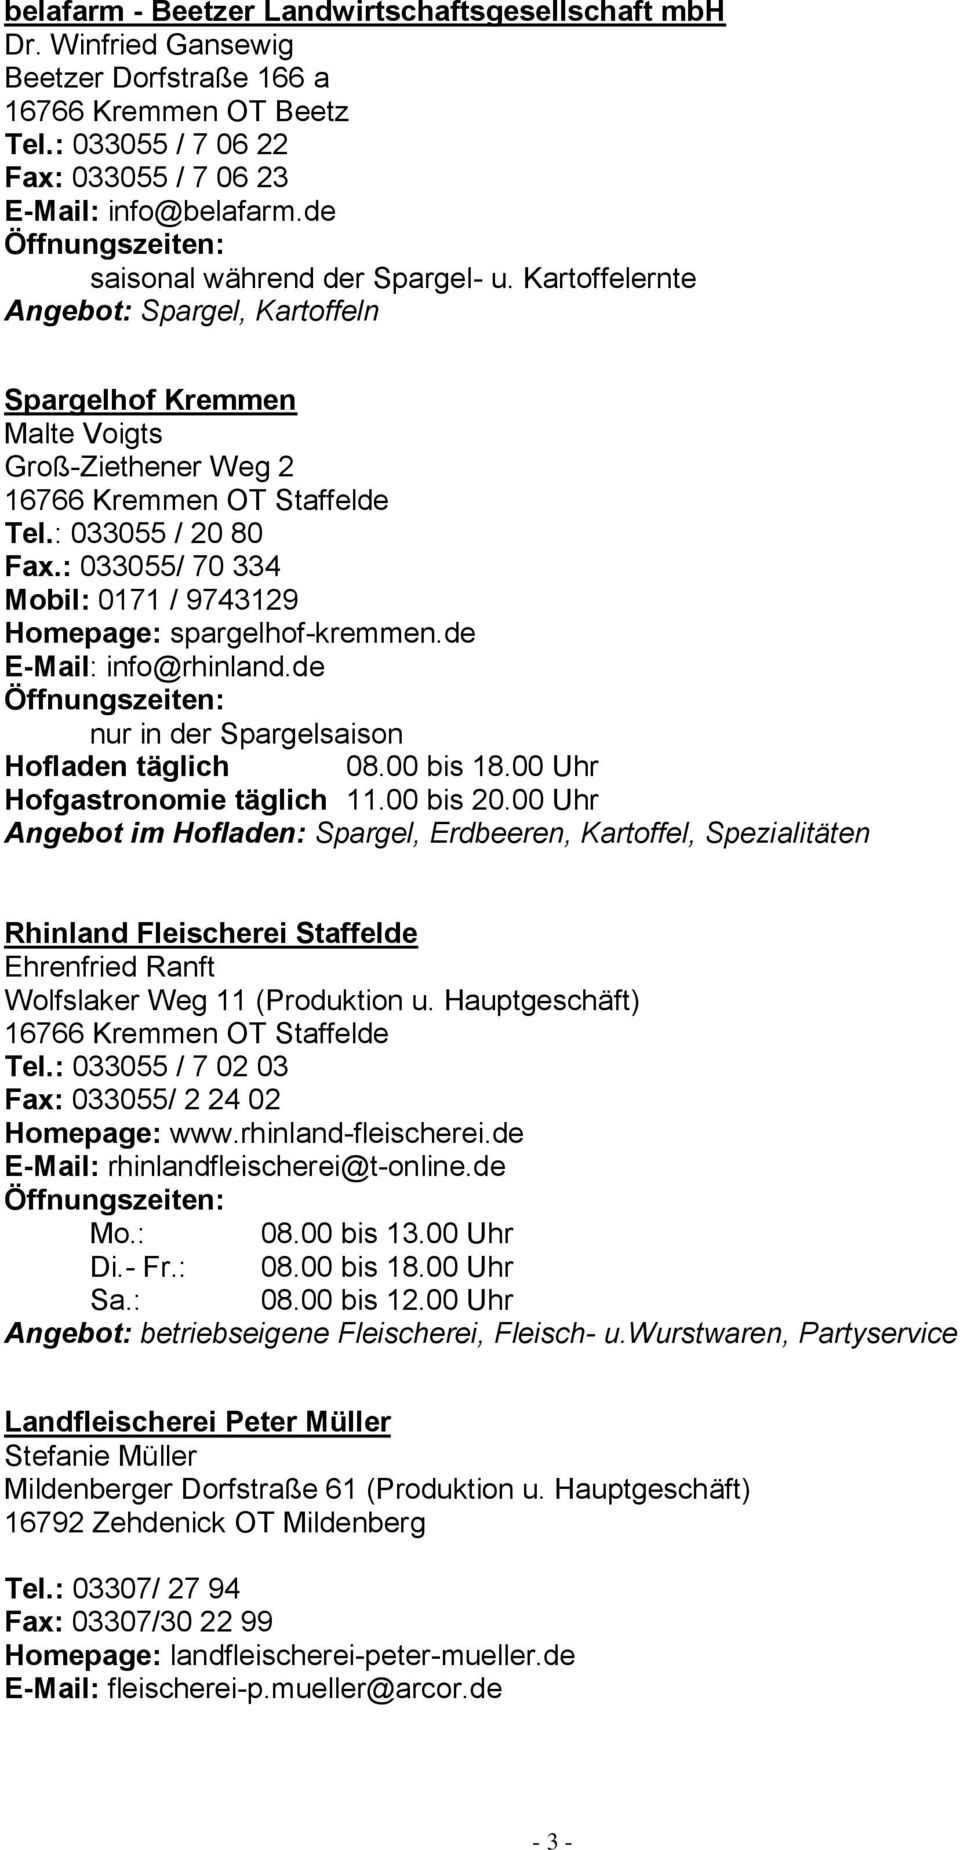 : 033055/ 70 334 Mobil: 0171 / 9743129 Homepage: spargelhof-kremmen.de E-Mail: info@rhinland.de nur in der Spargelsaison Hofladen täglich 08.00 bis 18.00 Uhr Hofgastronomie täglich 11.00 bis 20.